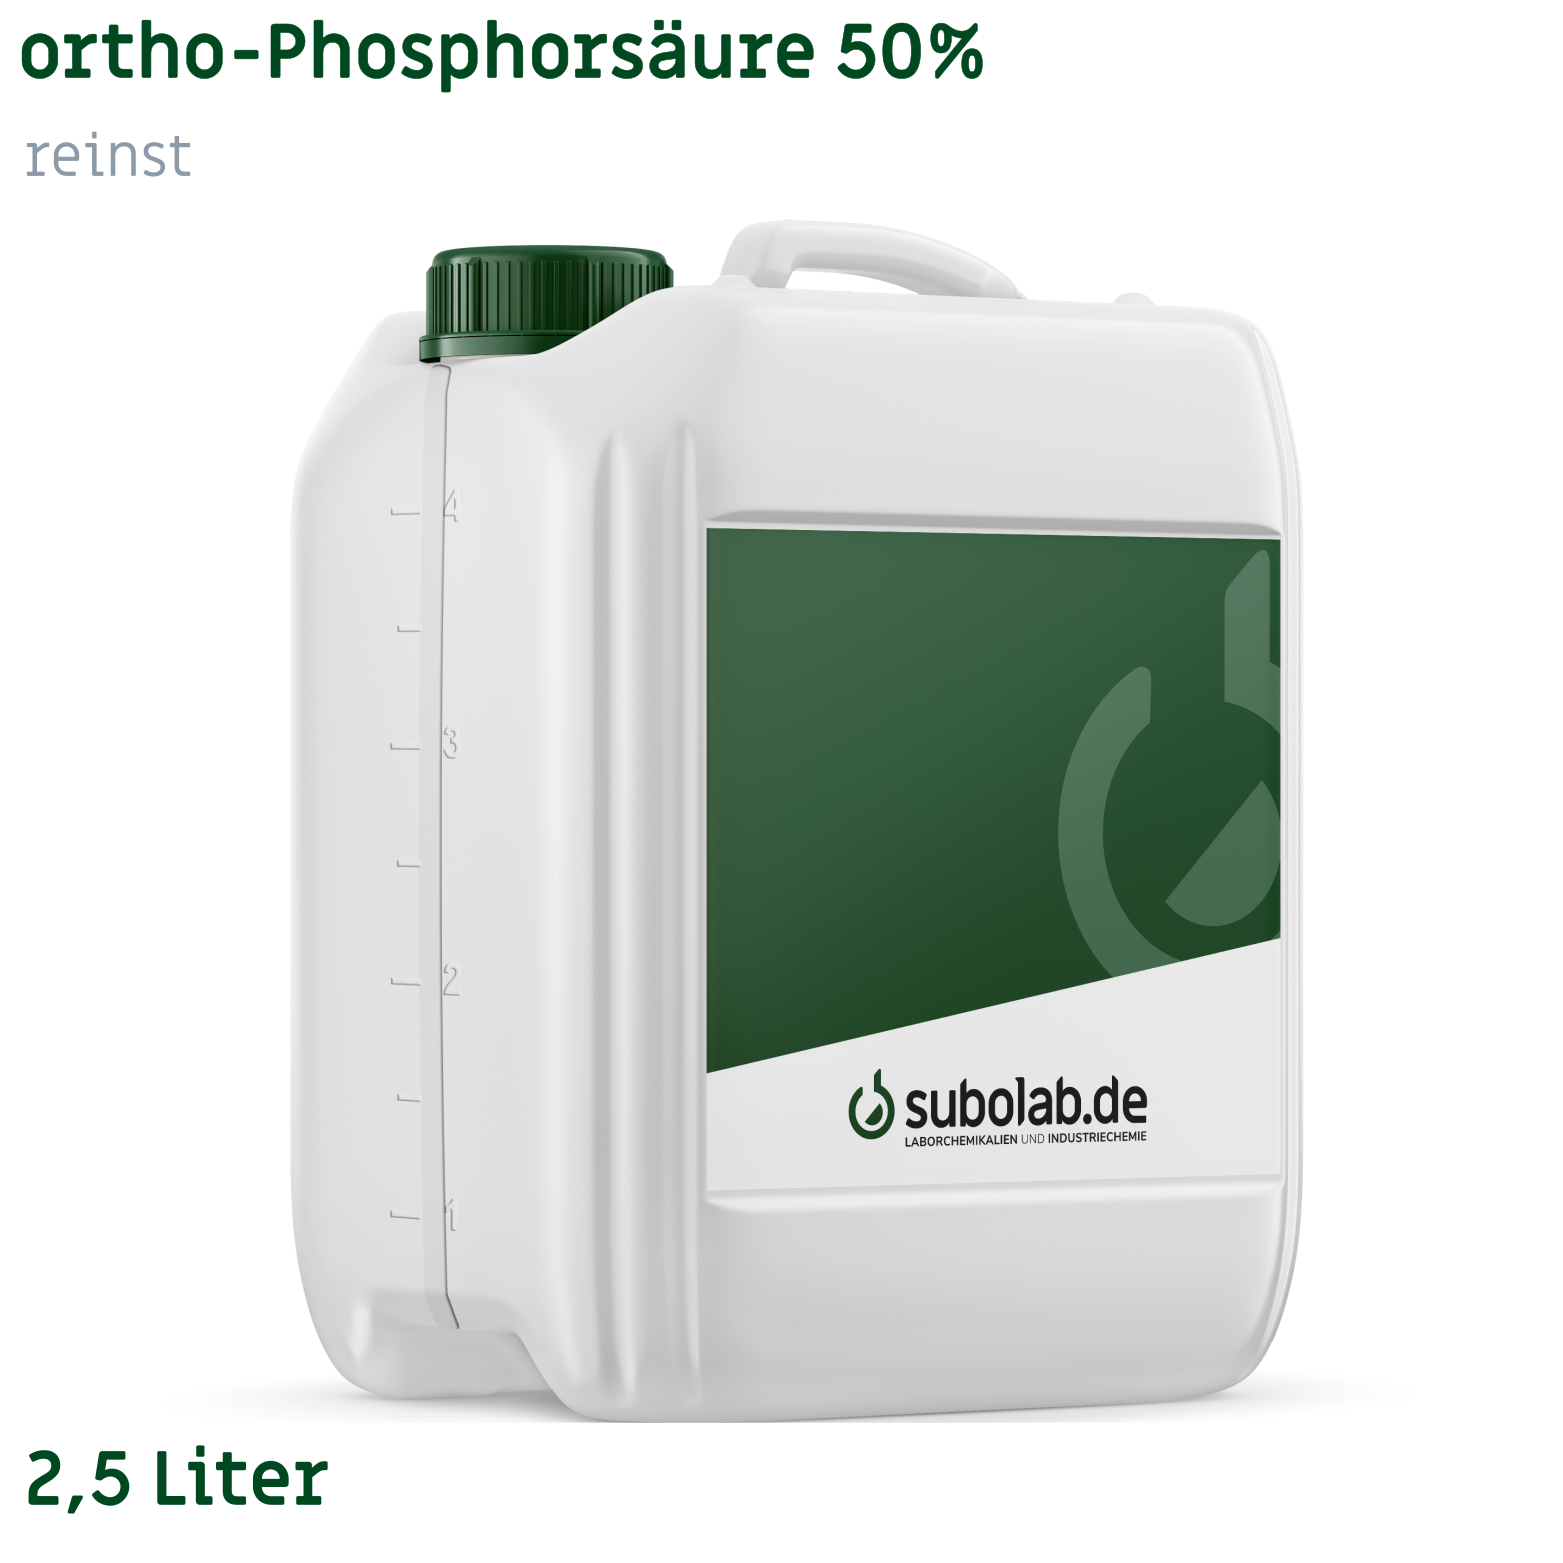 Bild von ortho-Phosphorsäure 50% reinst (2,5 Liter)